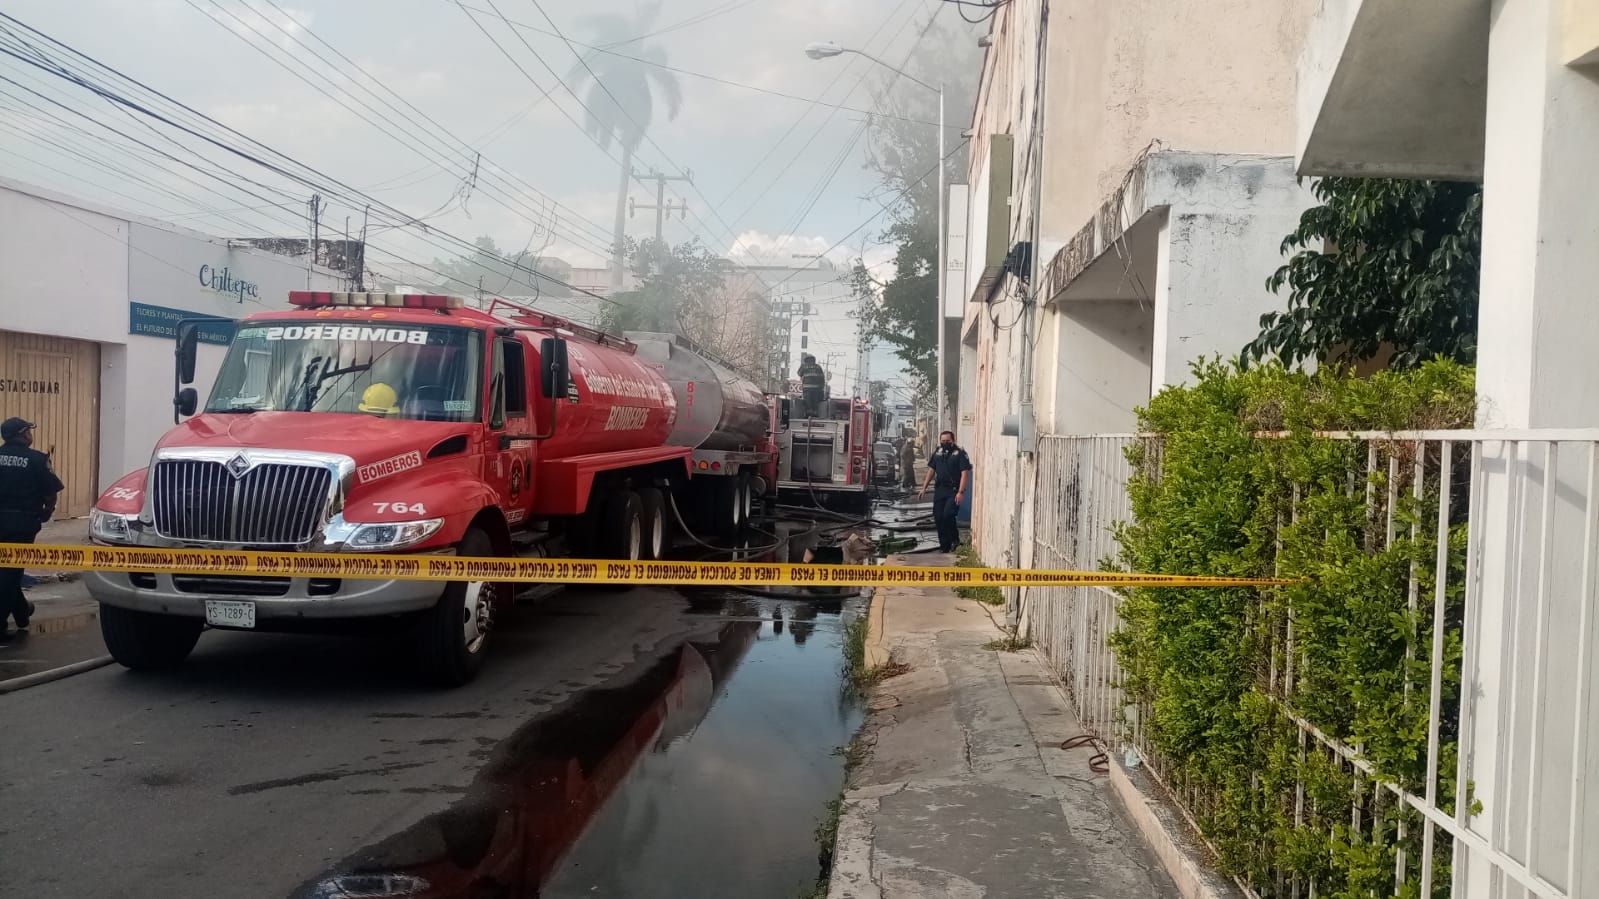 Evacúan a vecinos del centro de Mérida tras el incendio de una florería: VIDEO